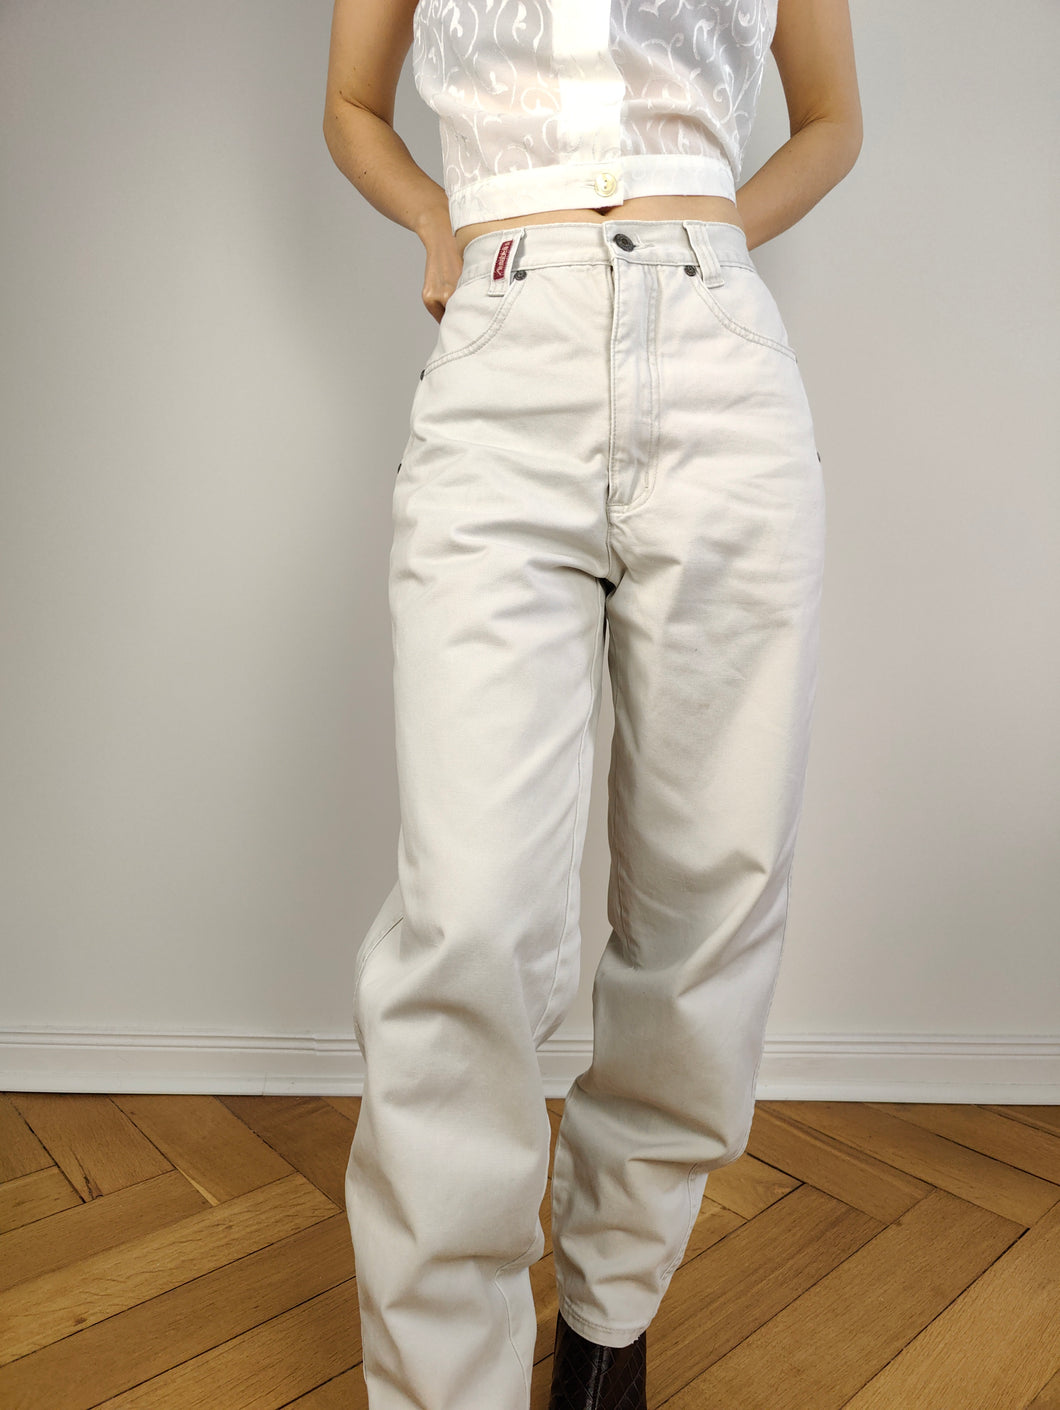 Die weißgraue Mom-Hose aus Baumwolle | Vintage Janet von Annabelle Mom-Jeans mit hoher Taille, entspannte Passform, Hose 30/30 M